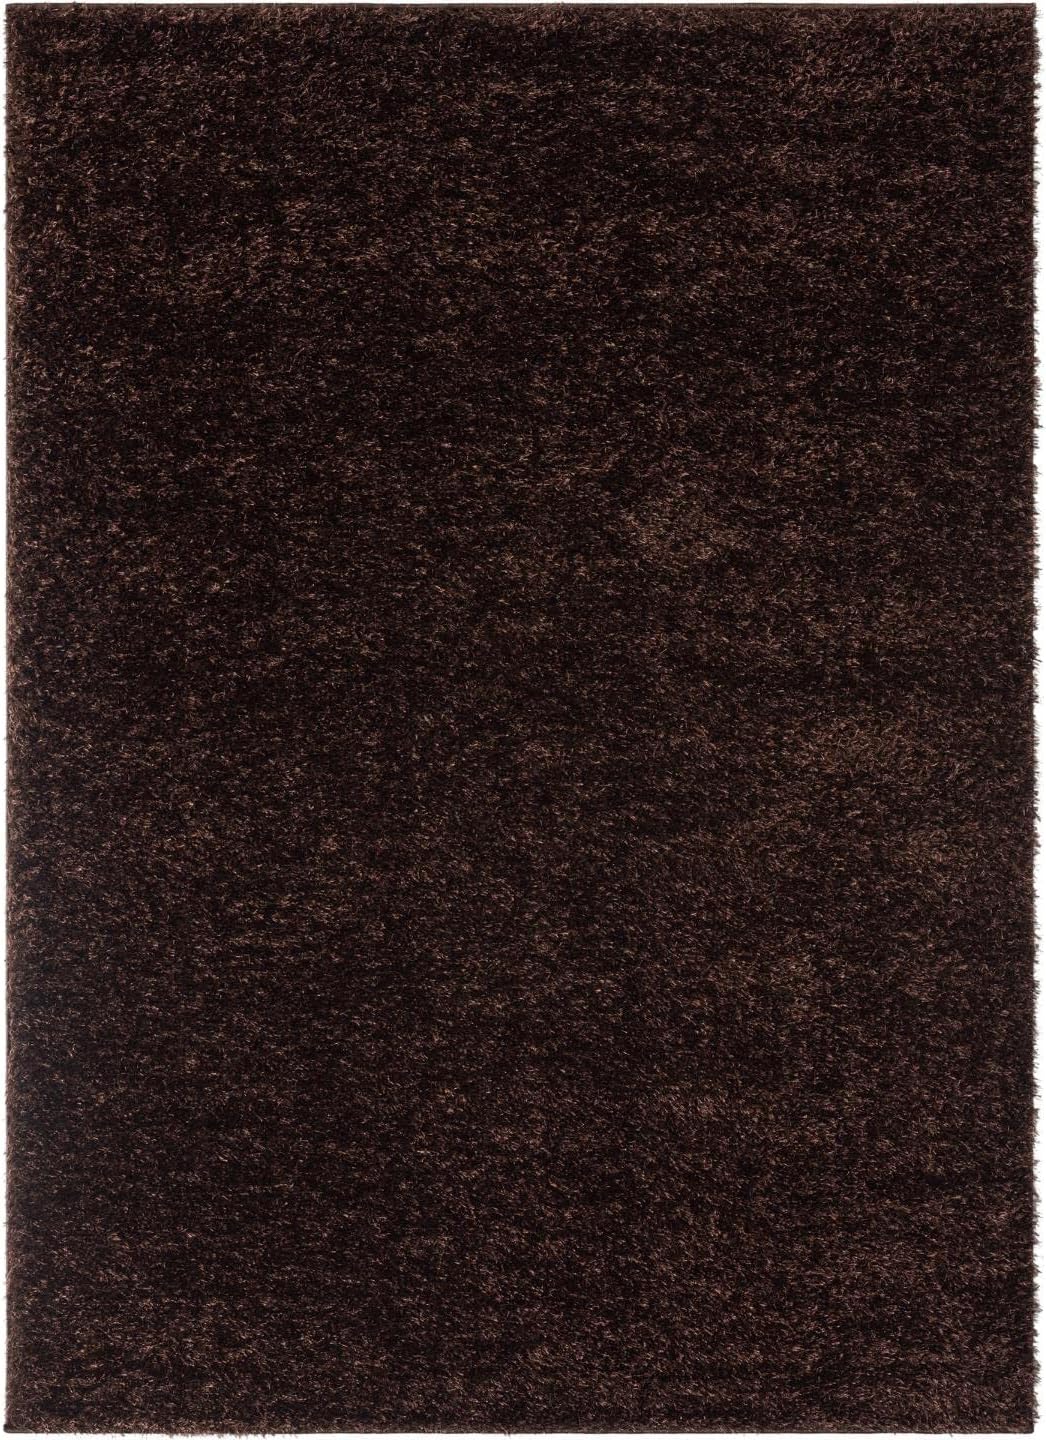 Brown Rug (5'x7')